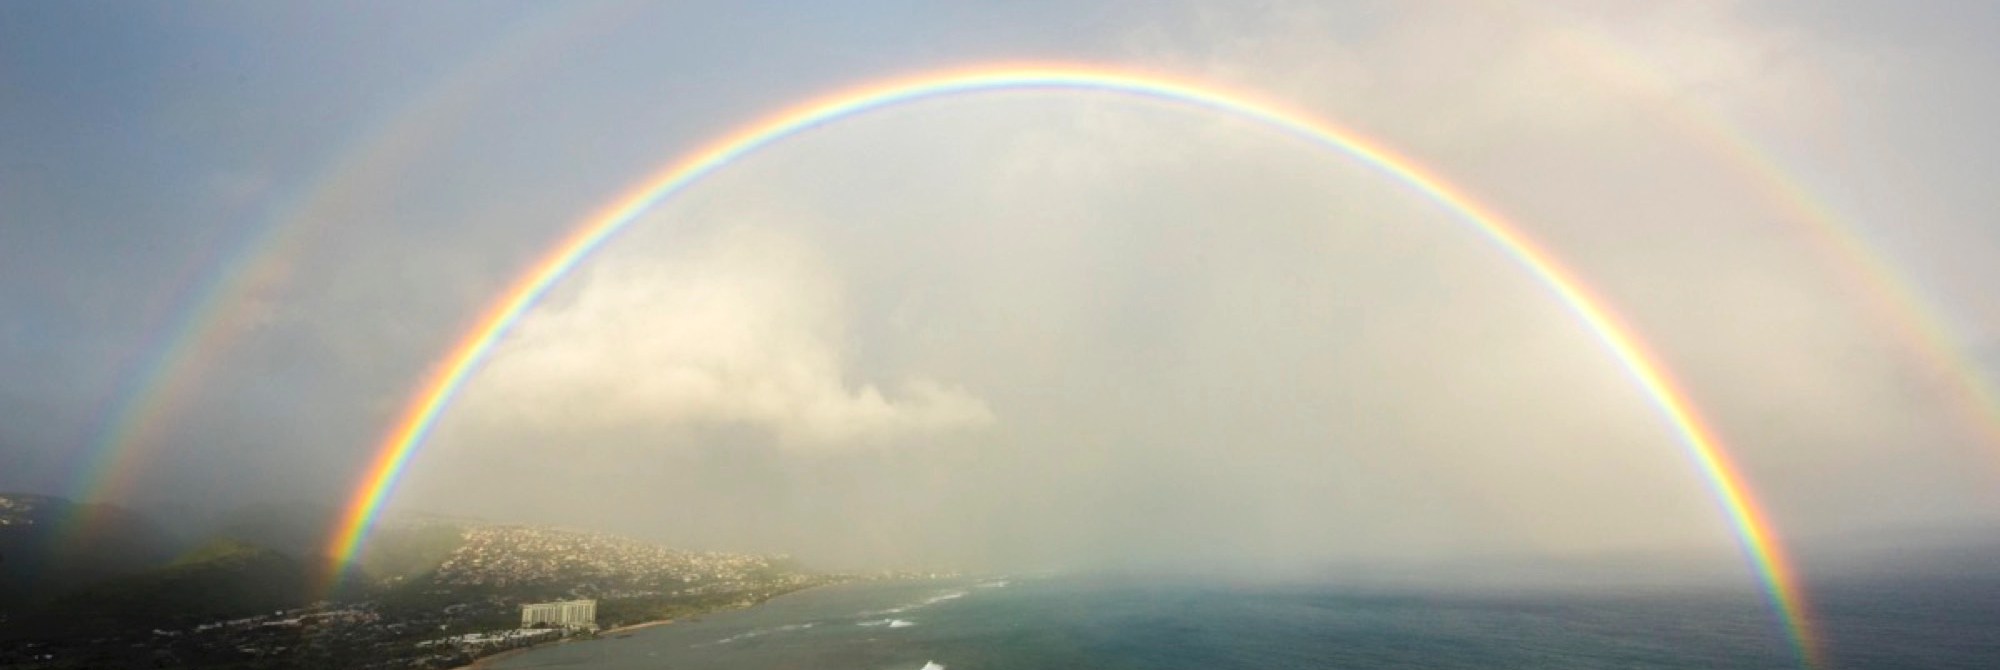 a double rainbow over the coastline of an island